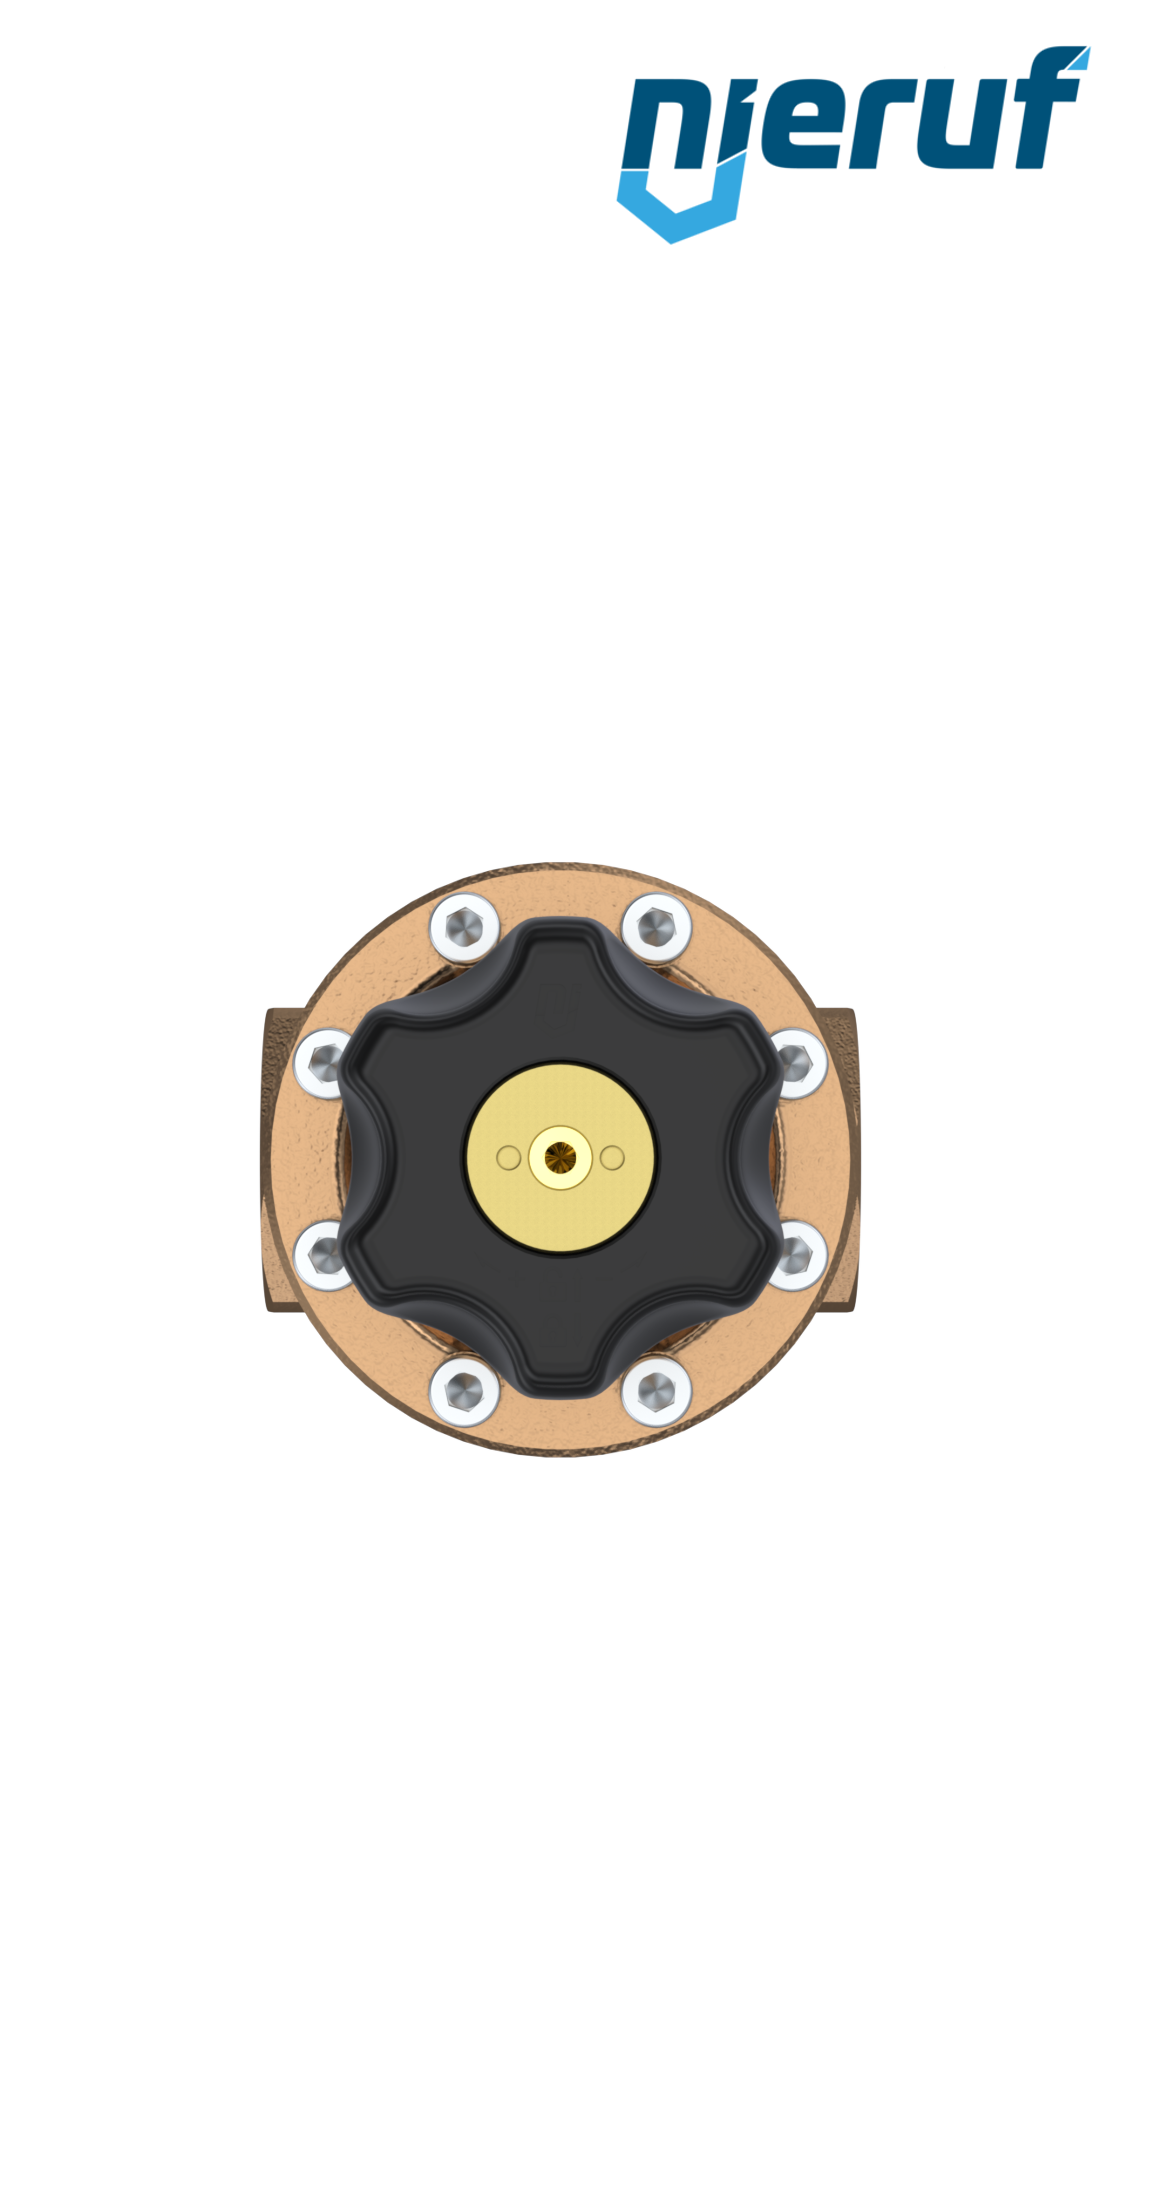 régulateur de pression de précision 1 1/2" pouce DM14 bronze FKM 5.0 - 30.0 bar